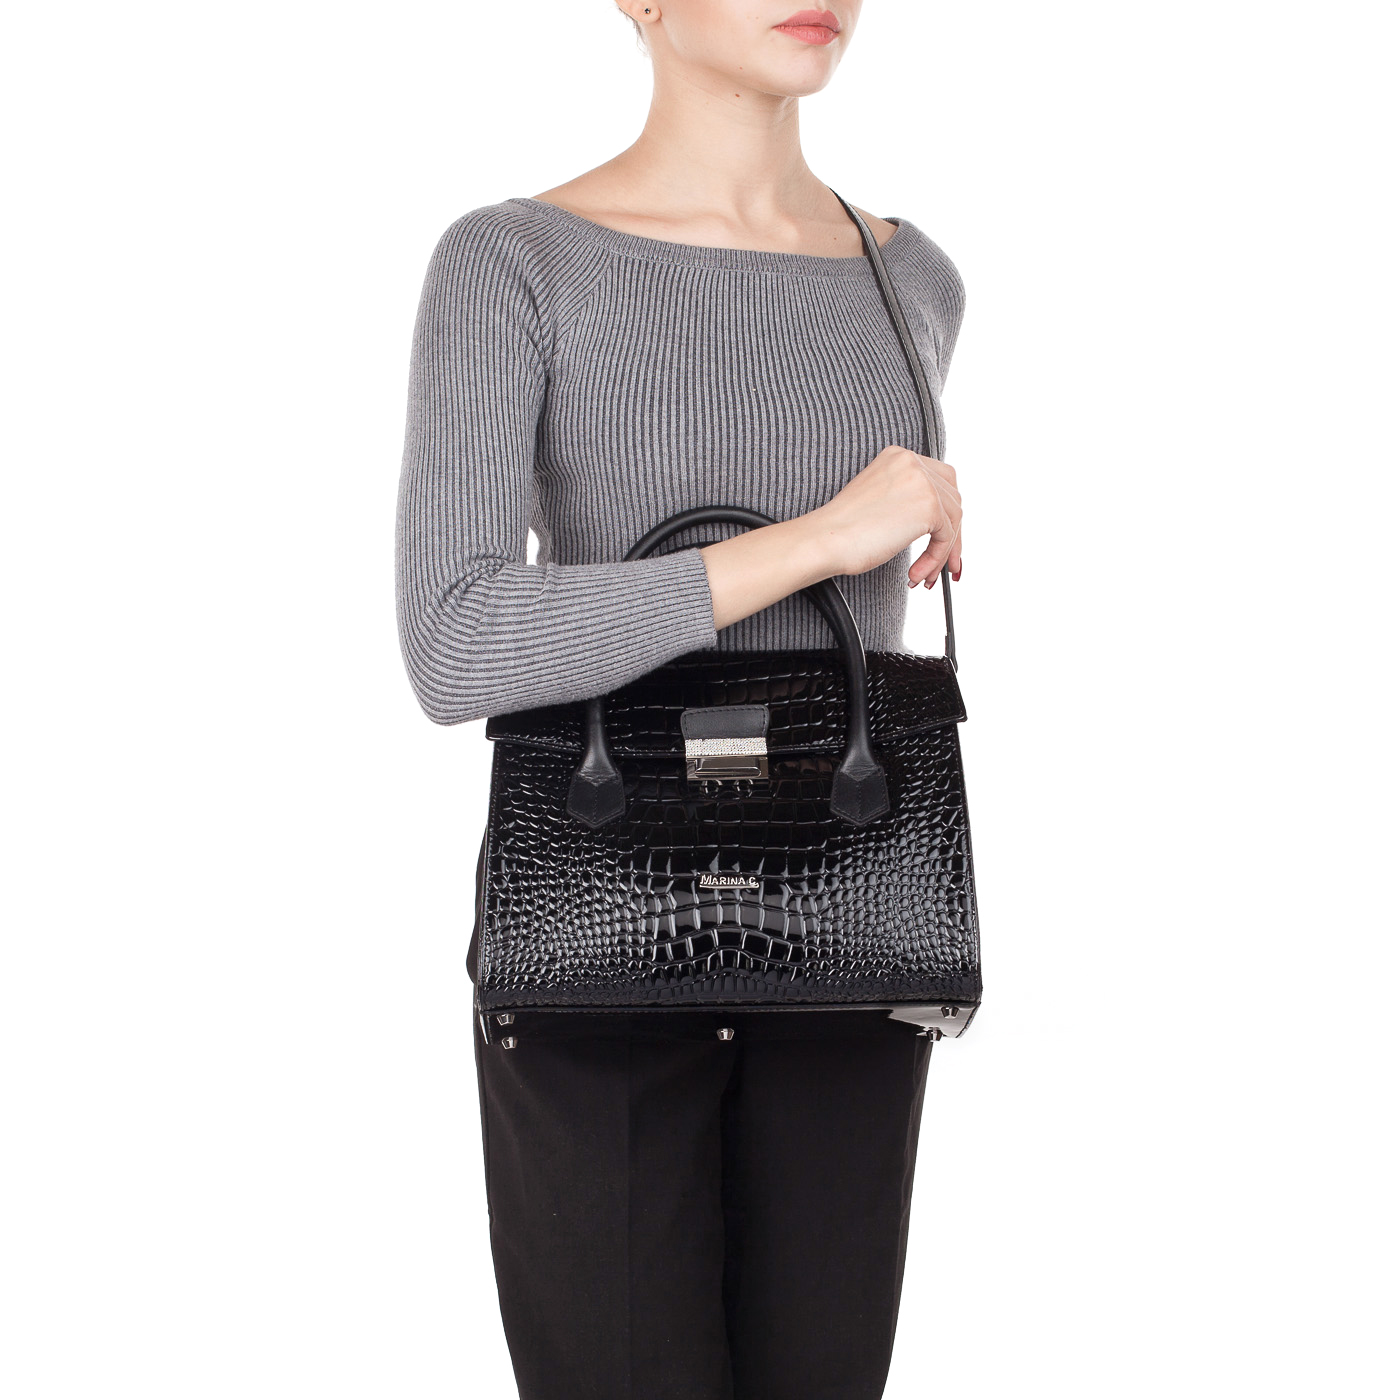 Женская сумка с отделкой под крокодиловую кожу Marina Creazioni 